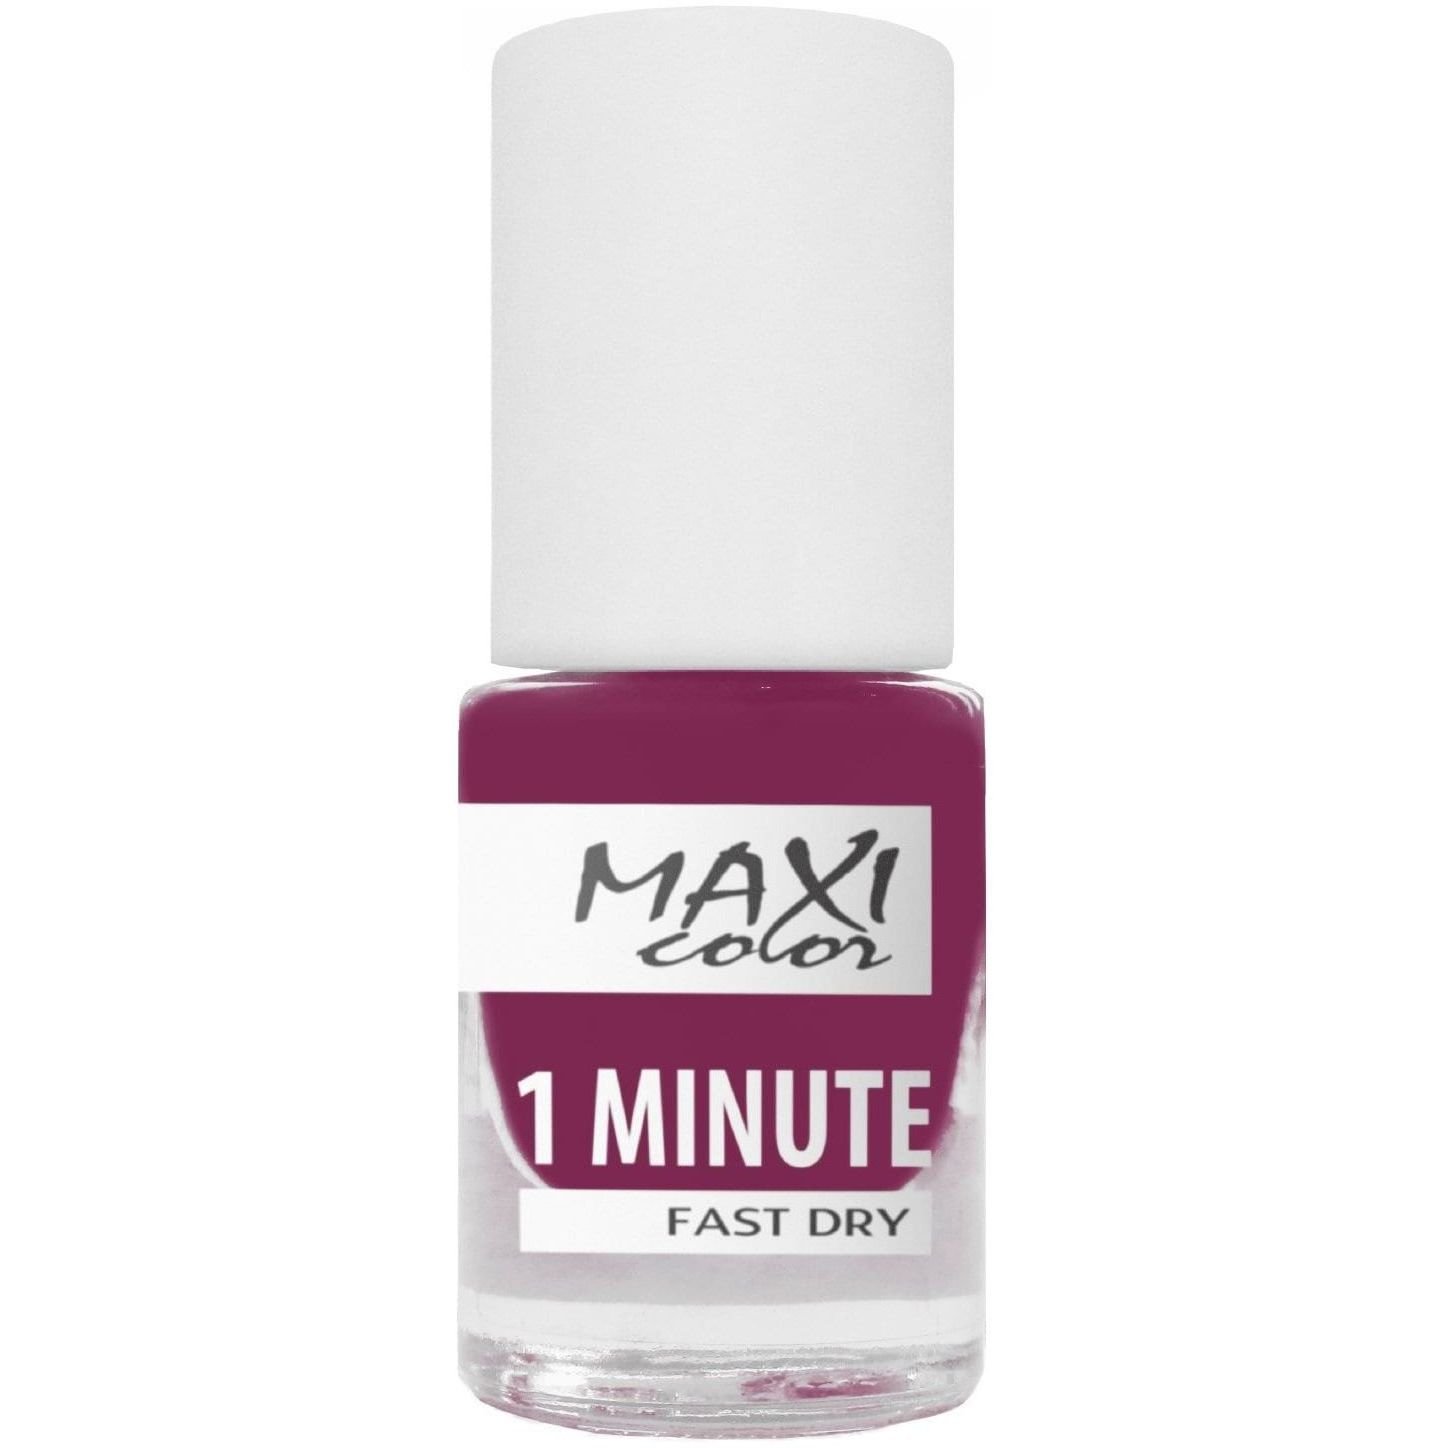 Лак для нігтів Maxi Color 1 Minute Fast Dry відтінок 041, 6 мл - фото 1